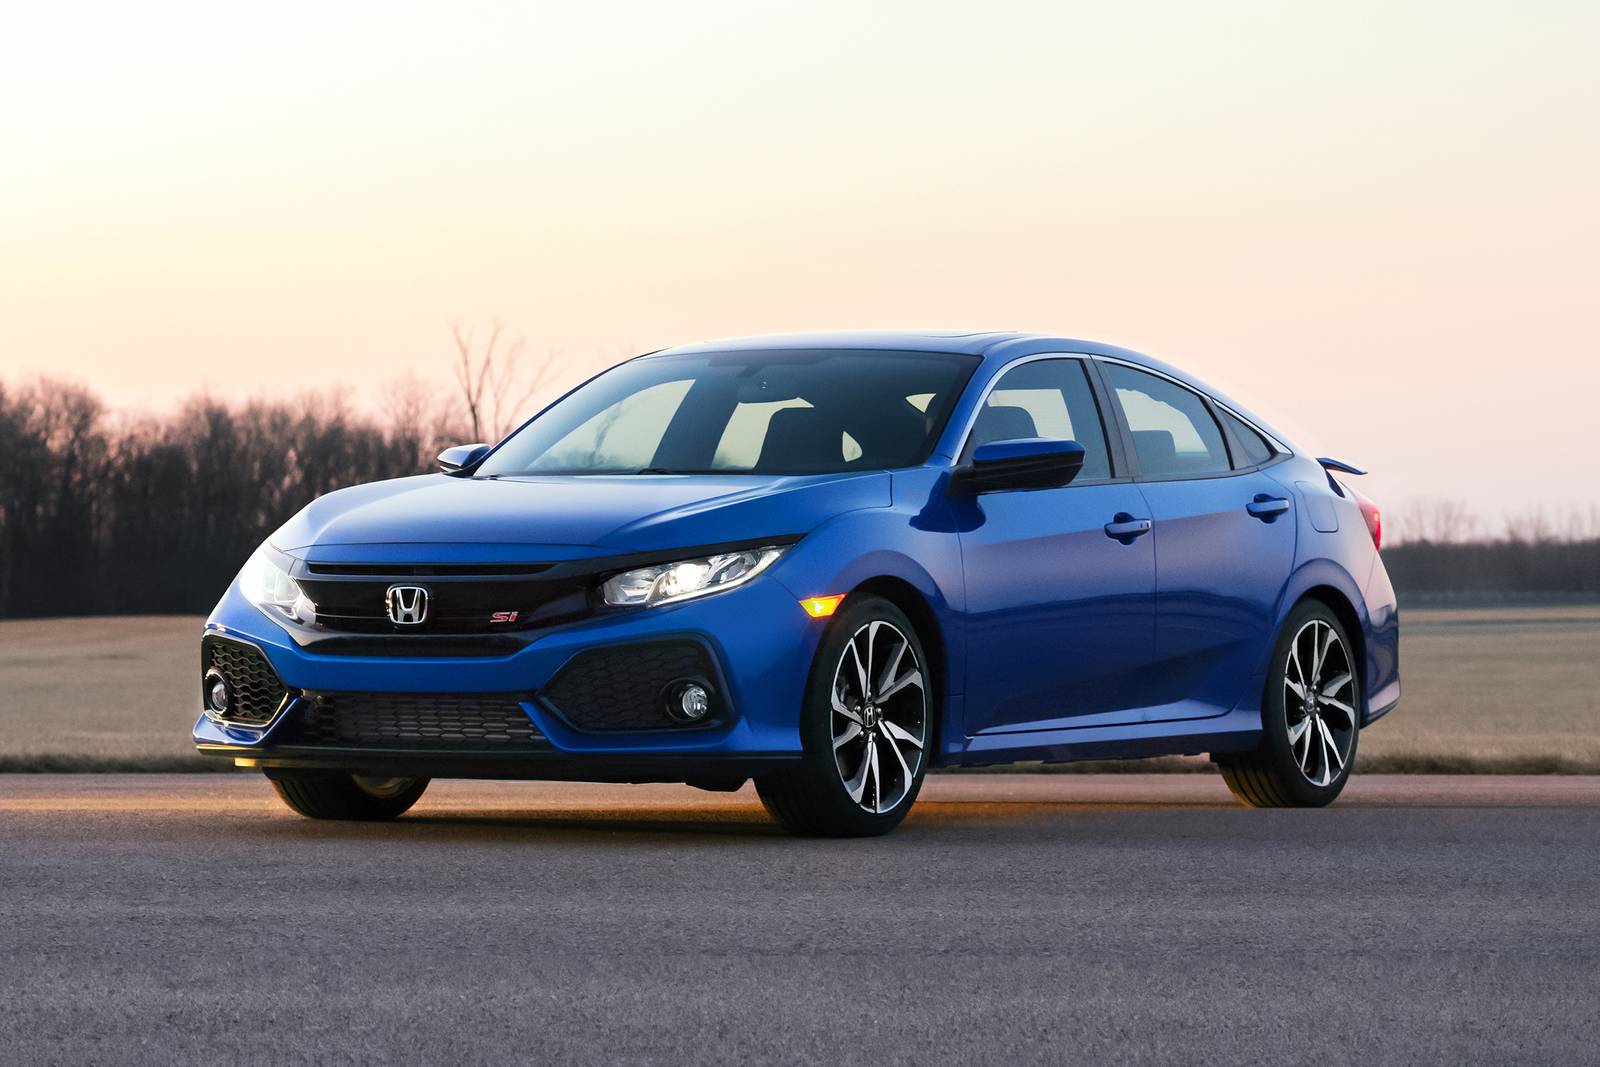 2019 Honda Civic Review & Ratings | Edmunds